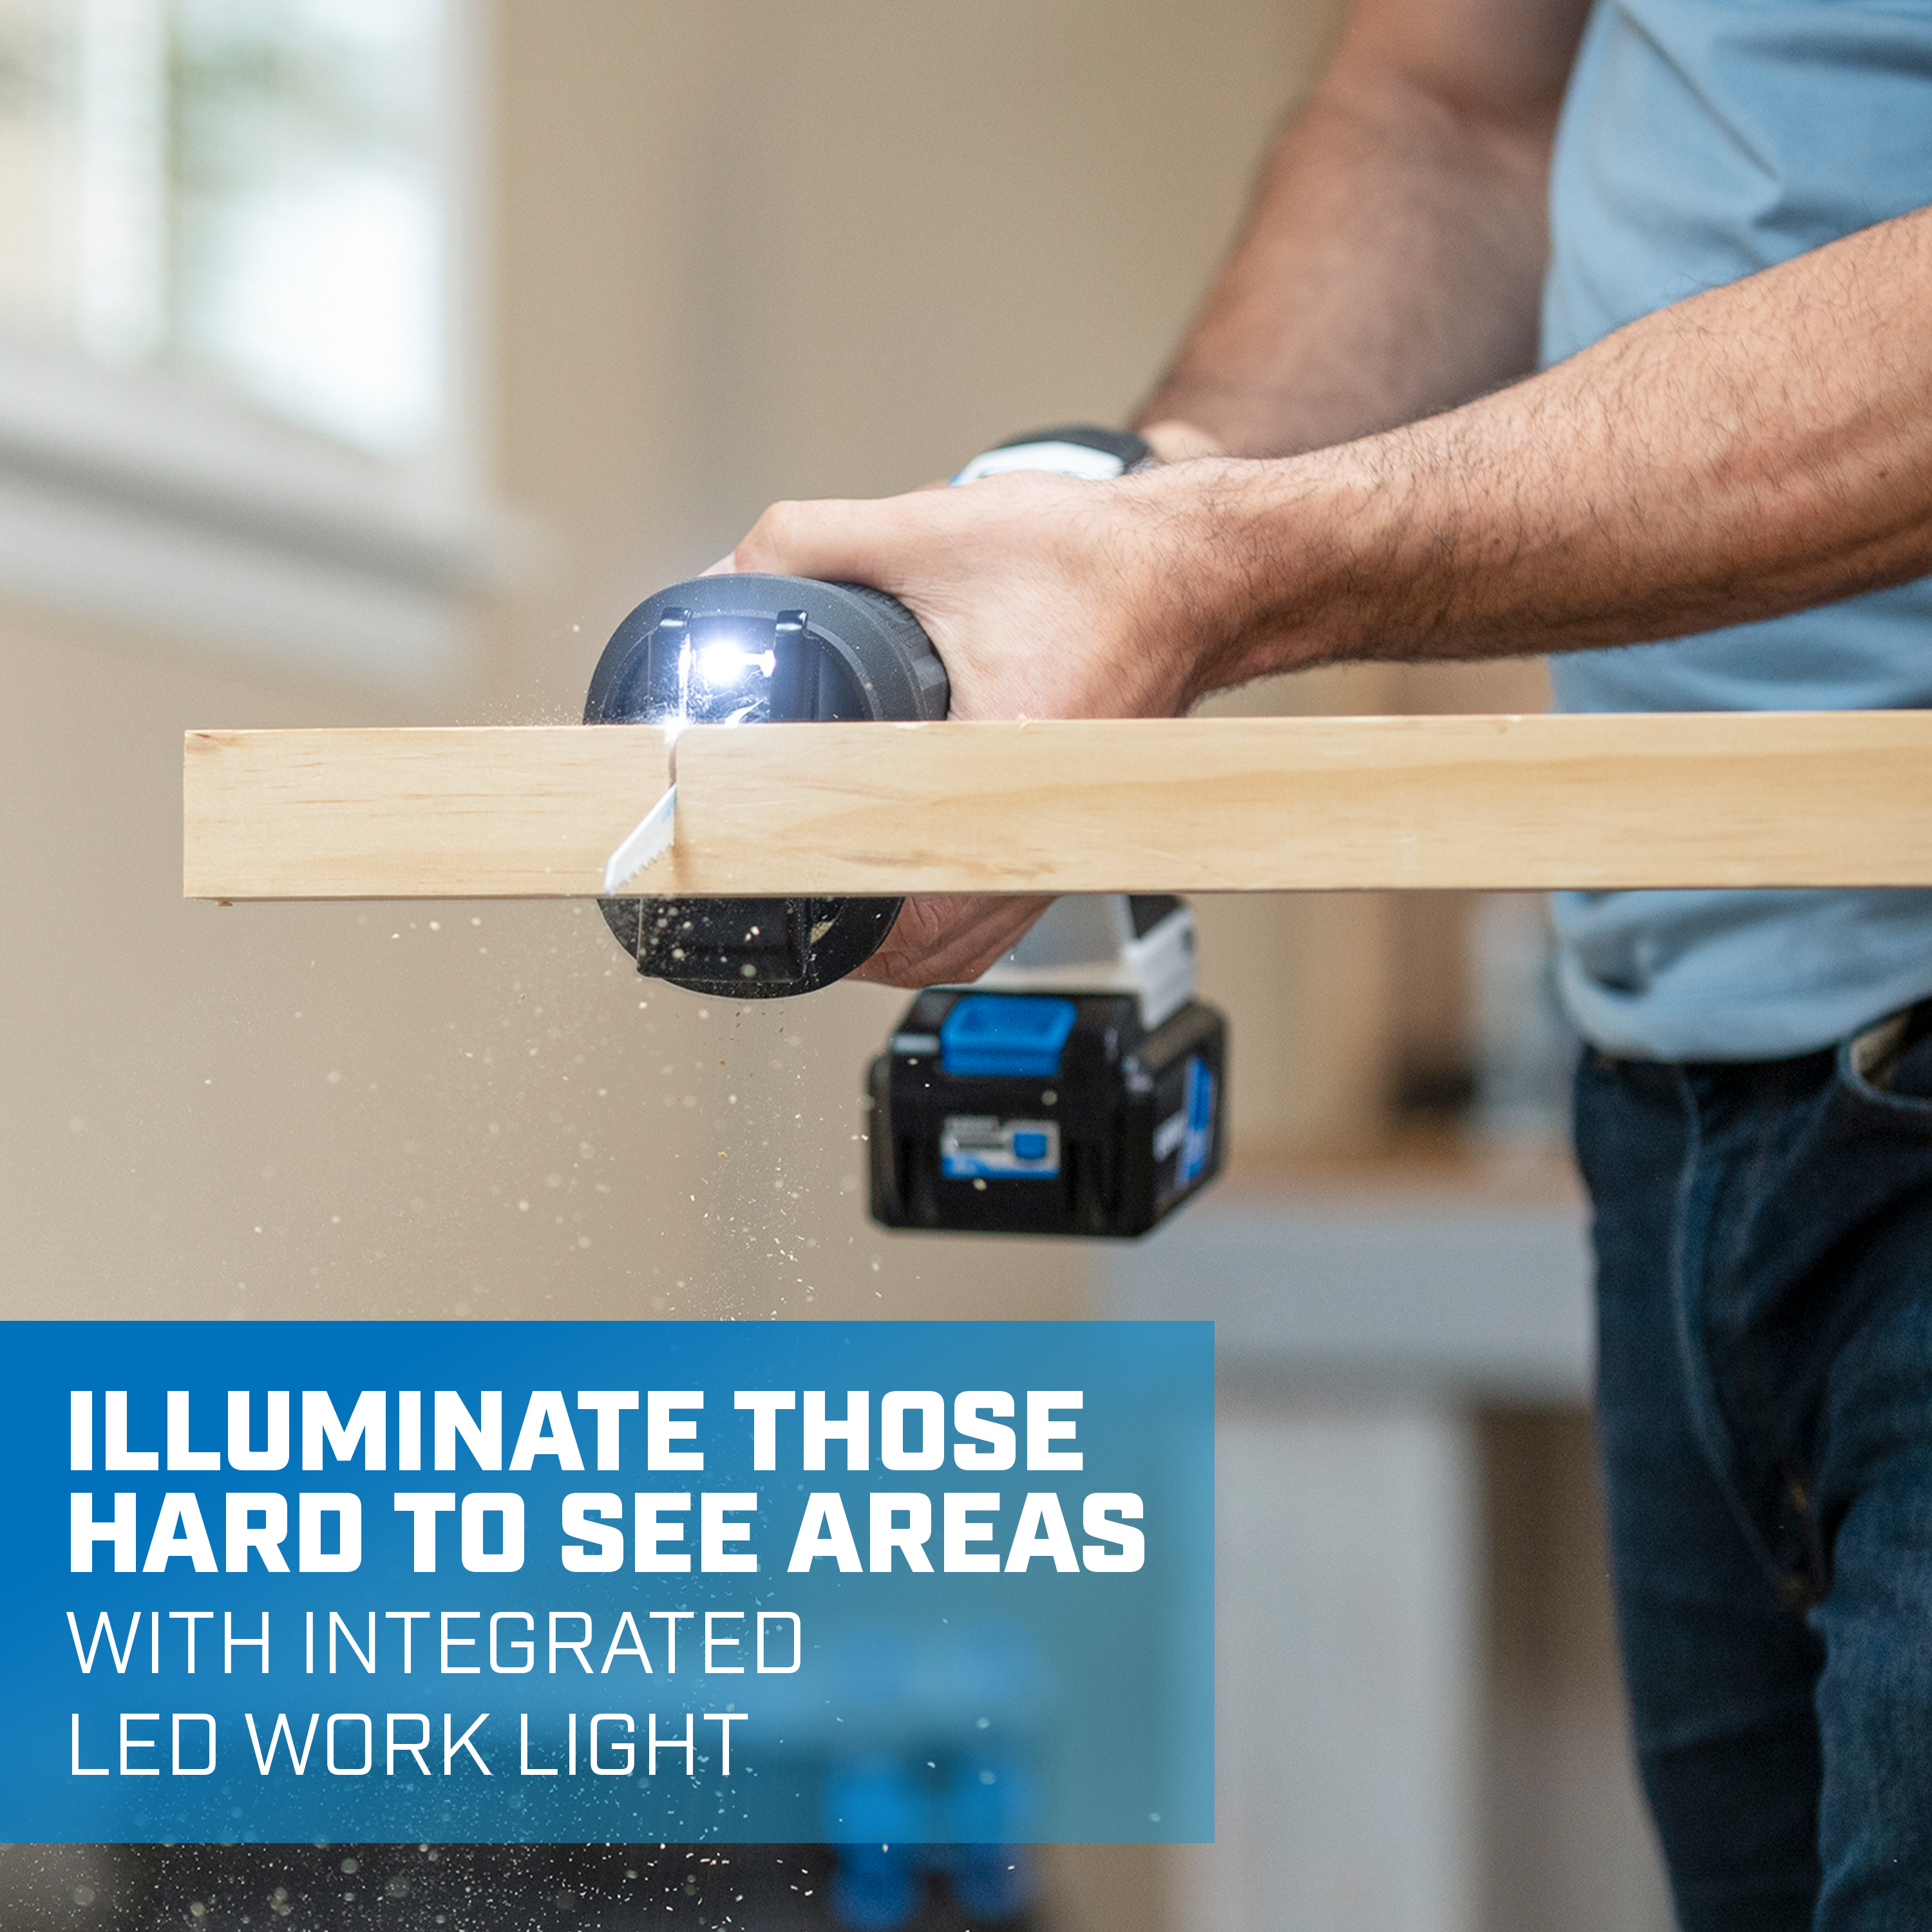 ilumine las áreas difíciles de ver con la luz de trabajo LED integrada